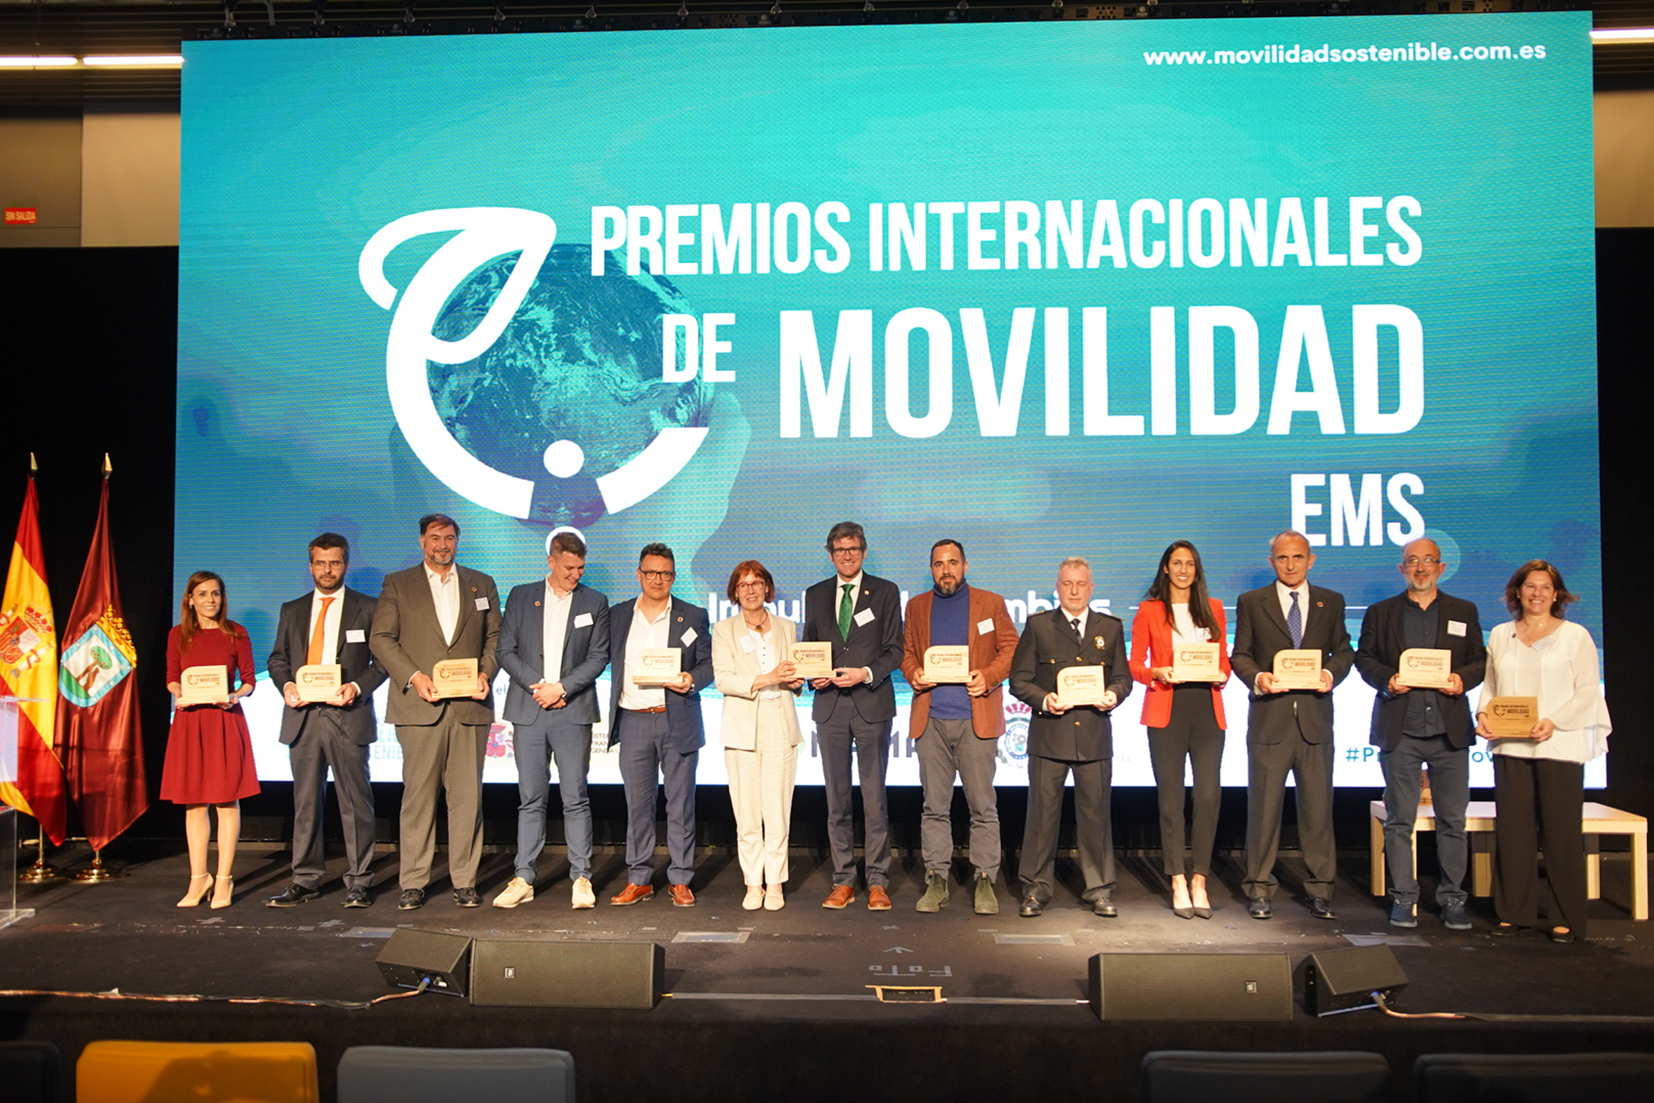 Premios Internacionales de Movilidad EMS